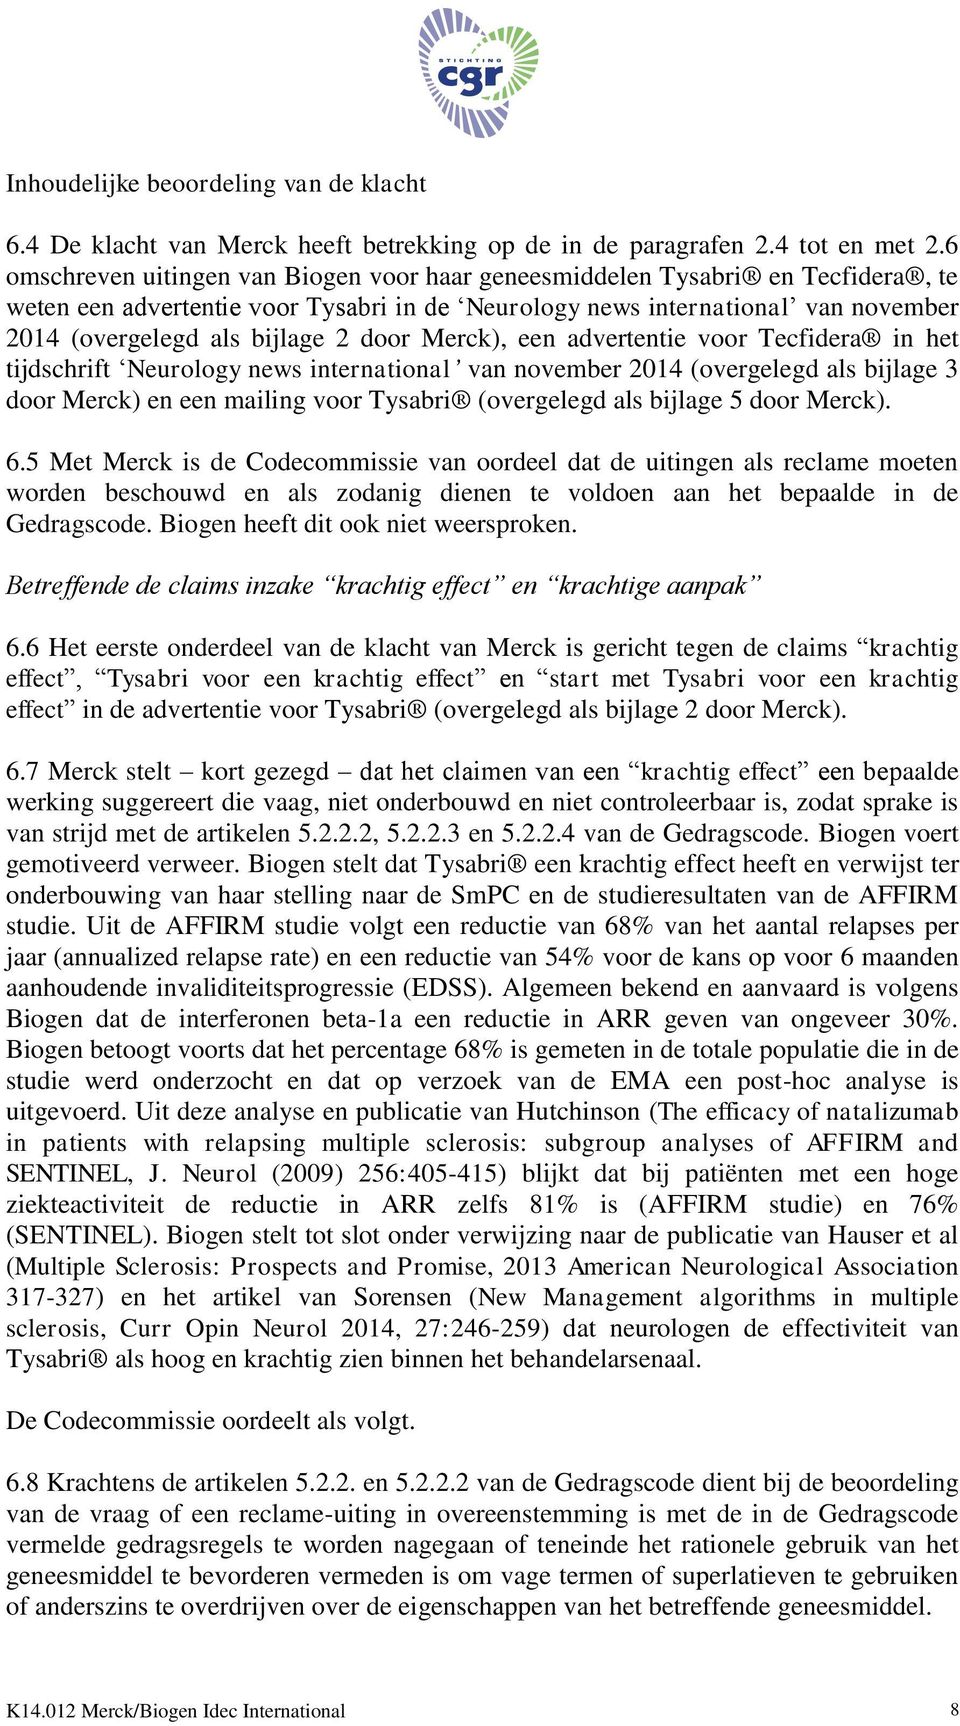 door Merck), een advertentie voor Tecfidera in het tijdschrift Neurology news international van november 2014 (overgelegd als bijlage 3 door Merck) en een mailing voor Tysabri (overgelegd als bijlage